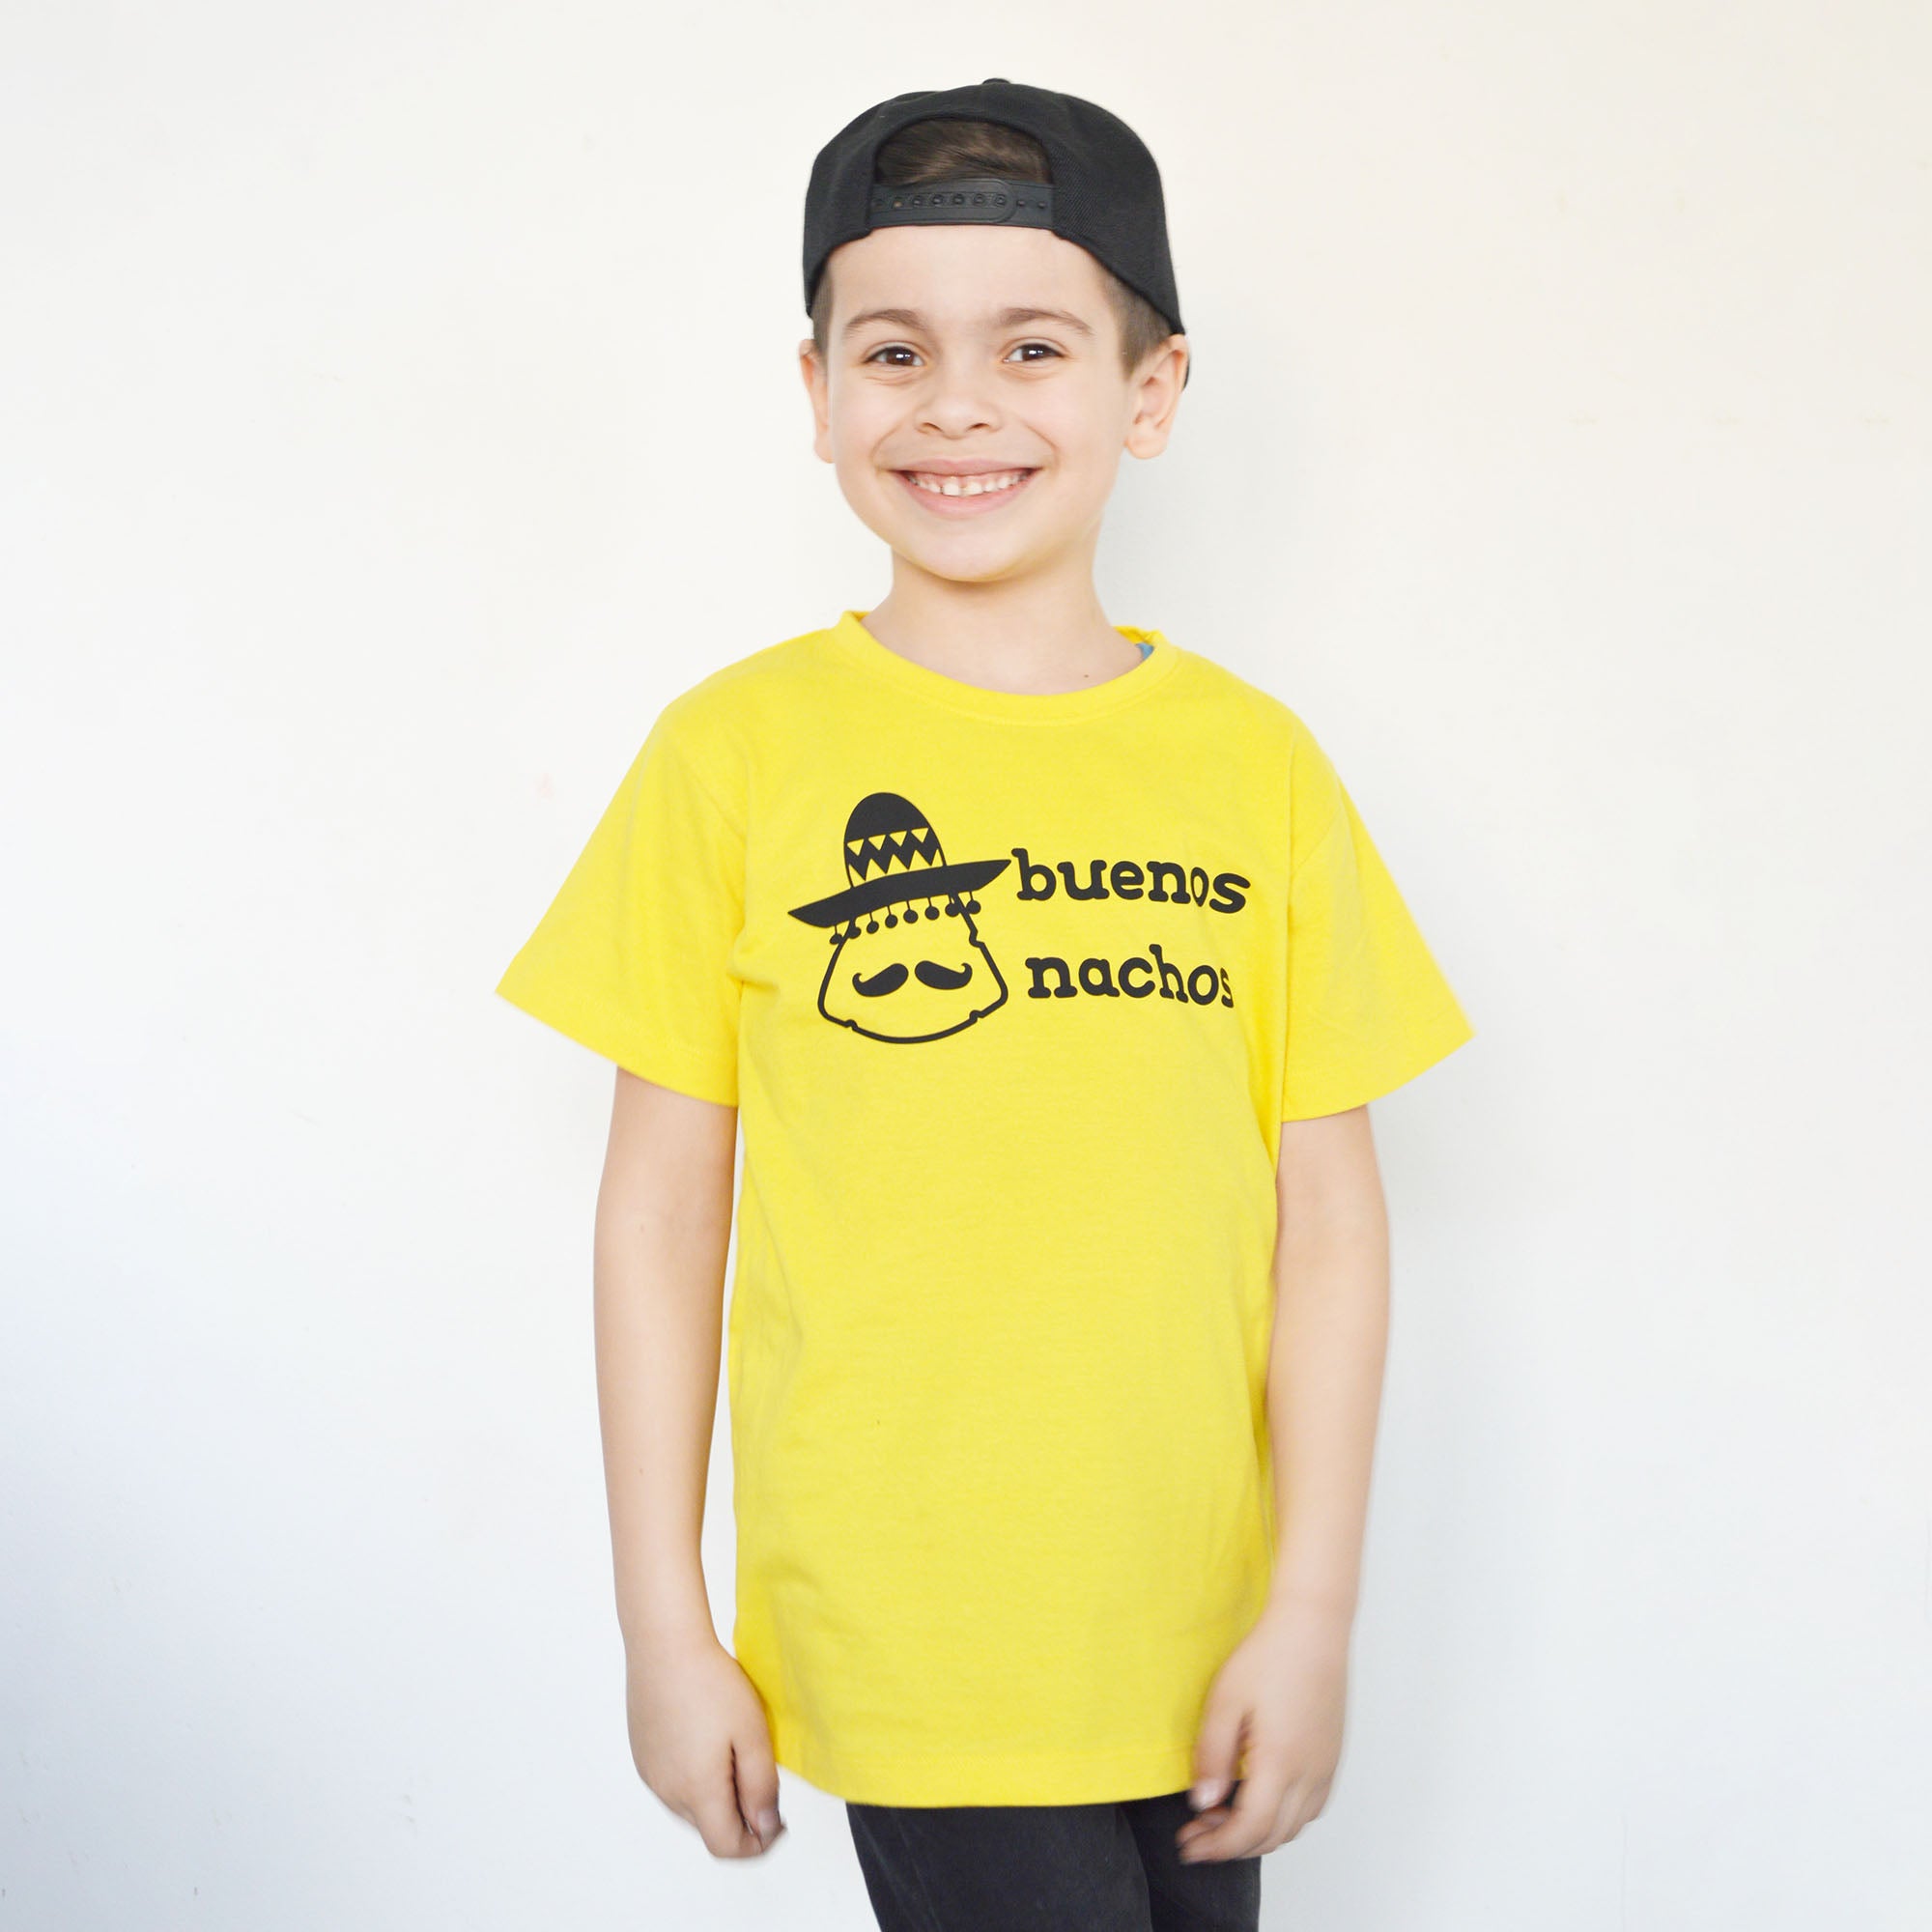 'Buenos nachos' kids shortsleeve shirt